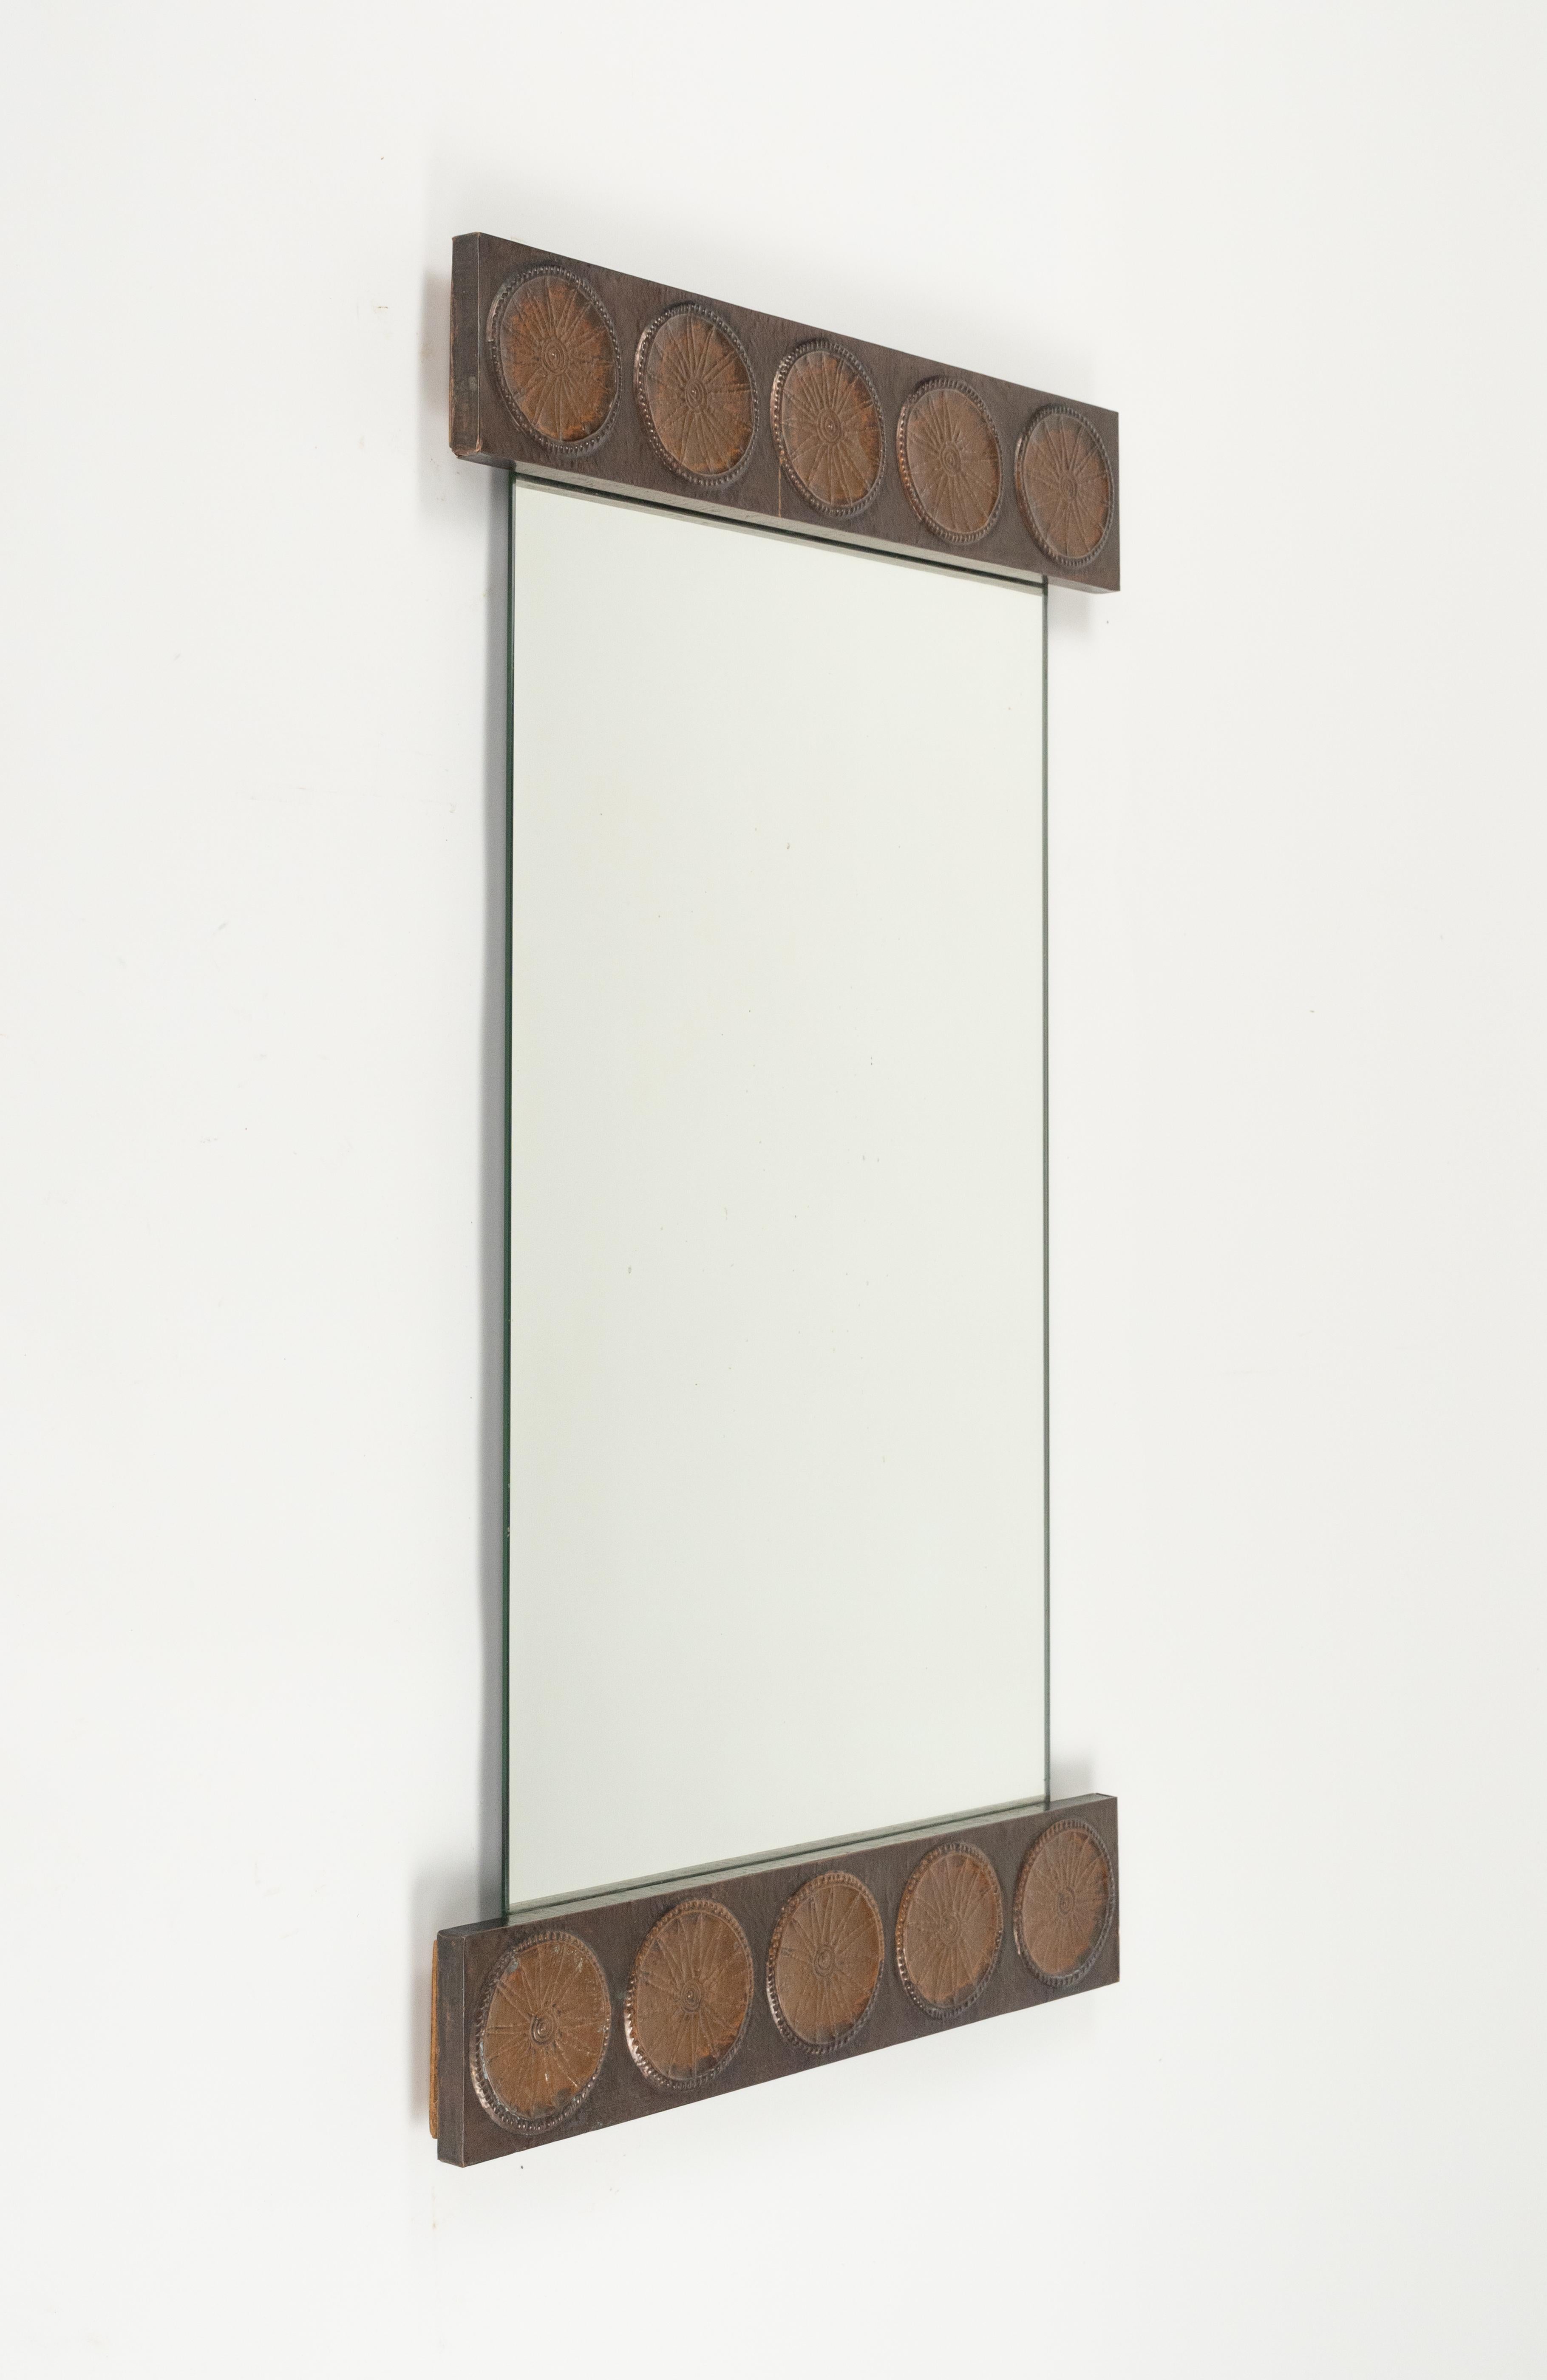 Midcentury Wall Mirror in Copper by Santambrogio & De Berti, Italy, 1960s For Sale 6